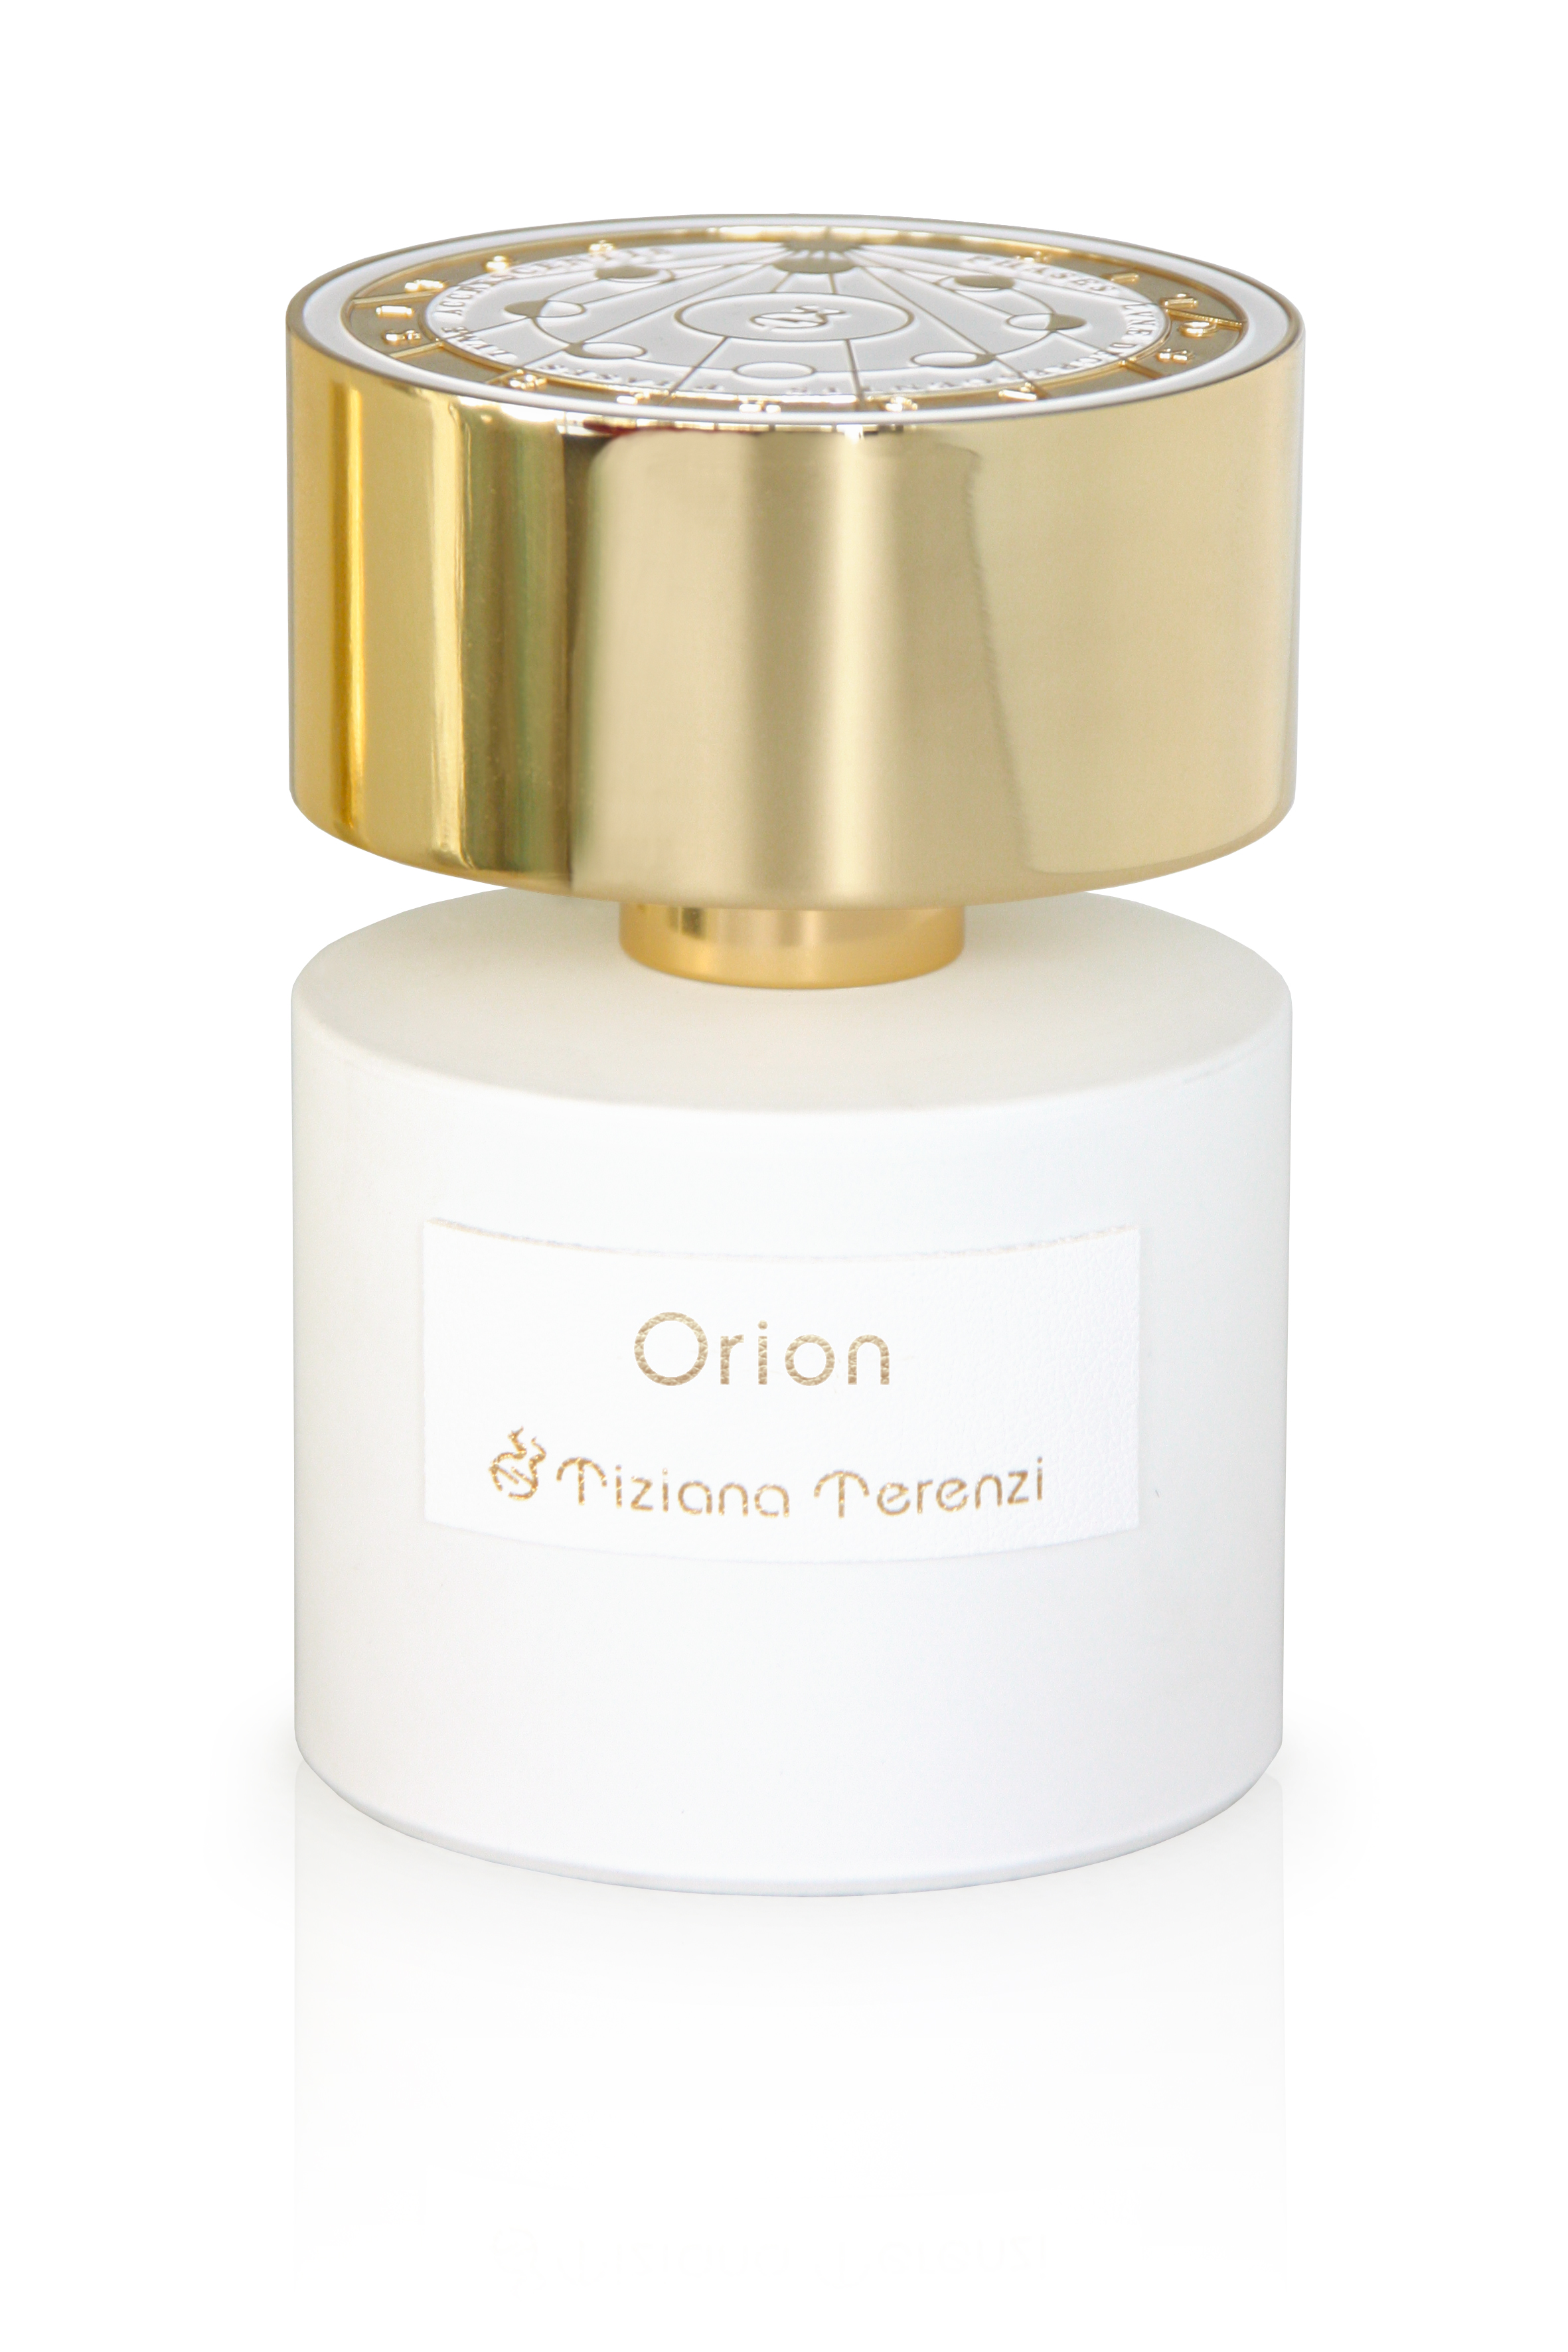 Tiziana Terenzi - Luna Collection - Orion - Extrait de Parfum 100 ml